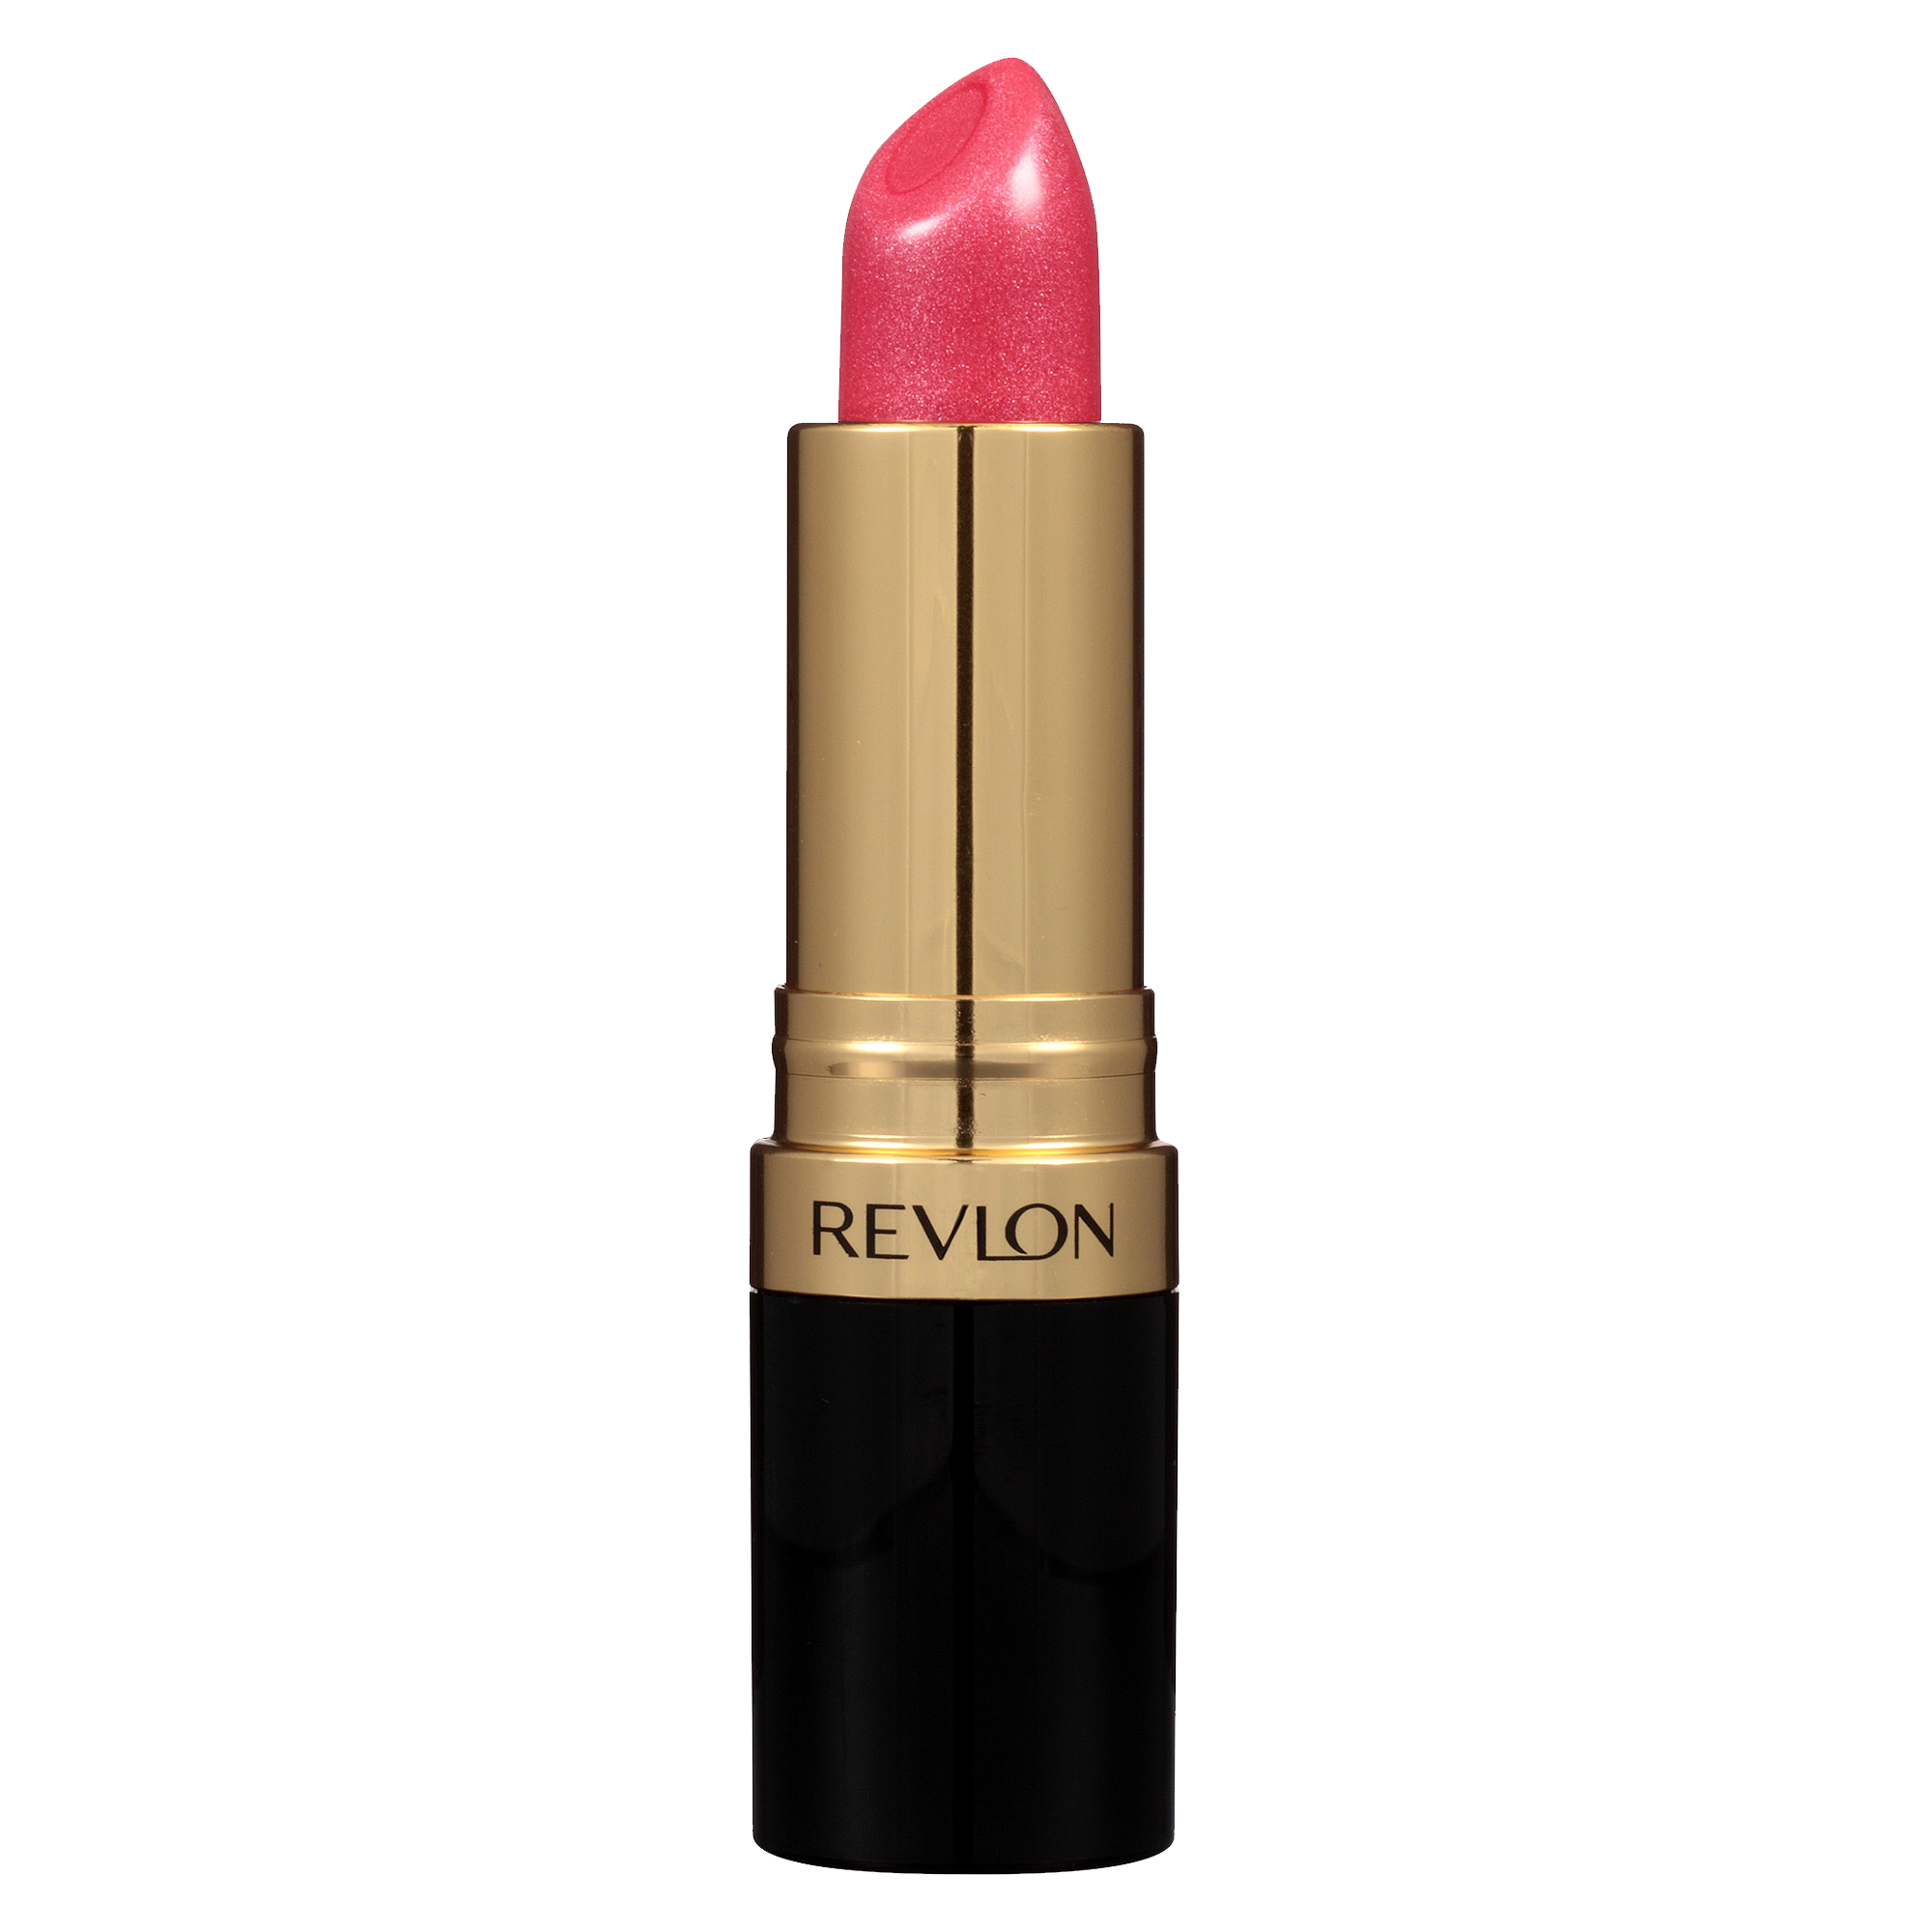 Red Lipstick Cliparts #289847